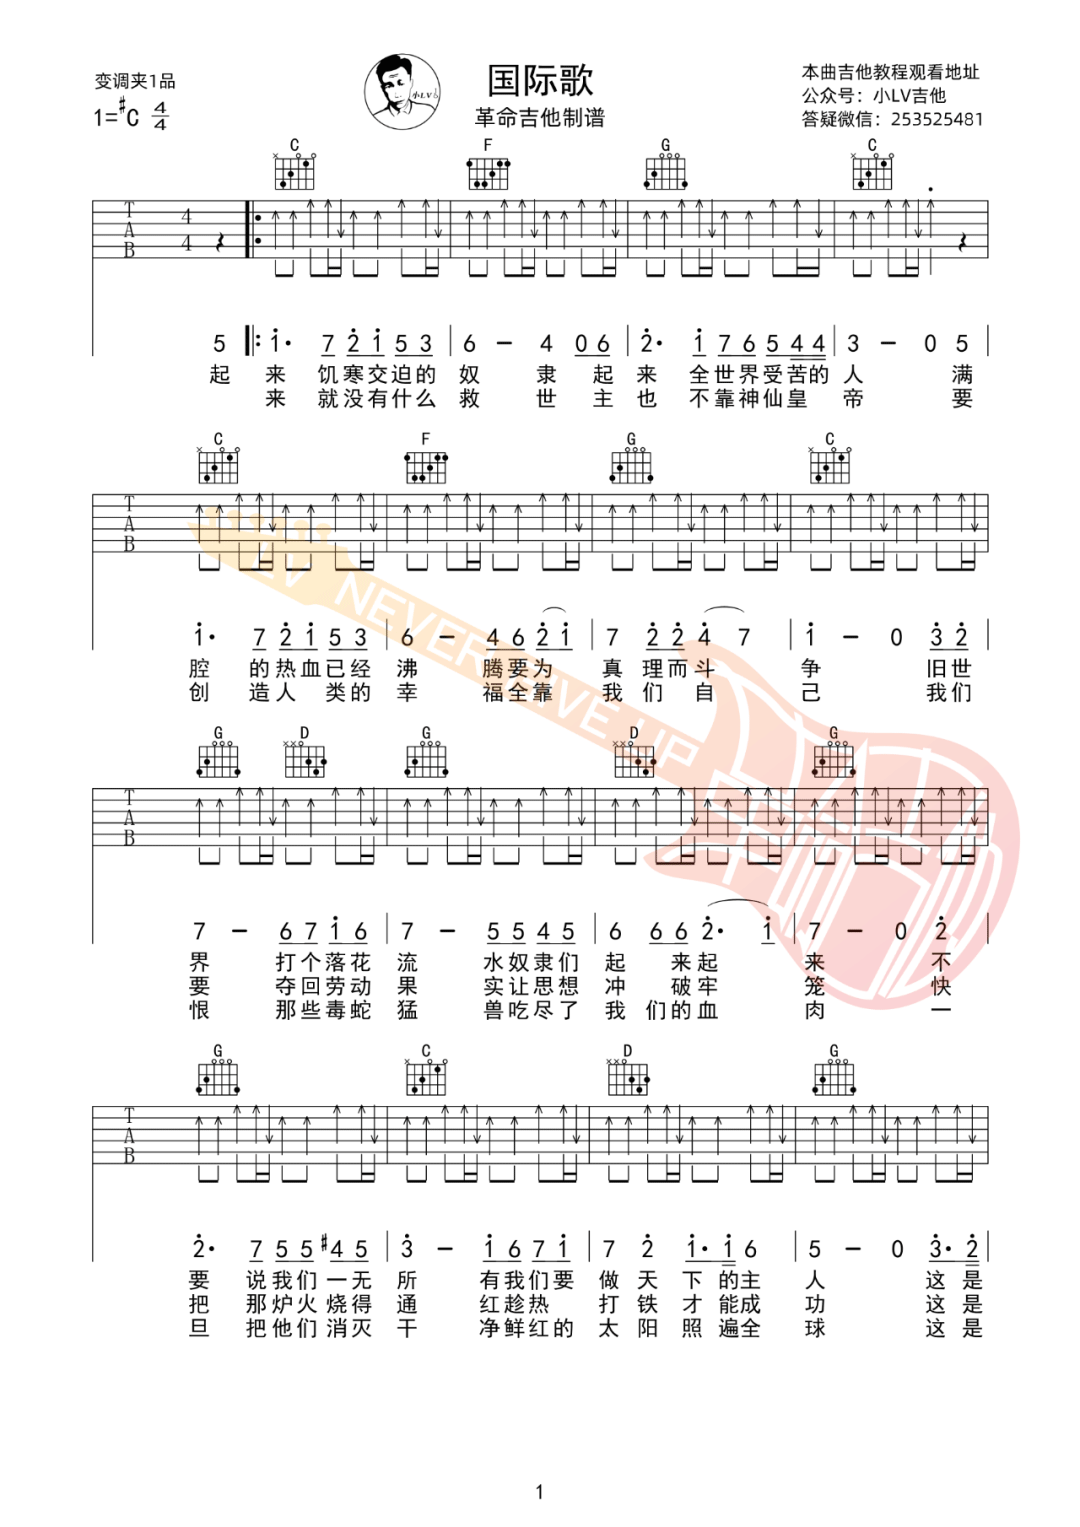 草东没有派对 - 山海(音艺吉他专家弹唱教学:第一季第9集) [弹唱 伴奏 教学] 吉他谱